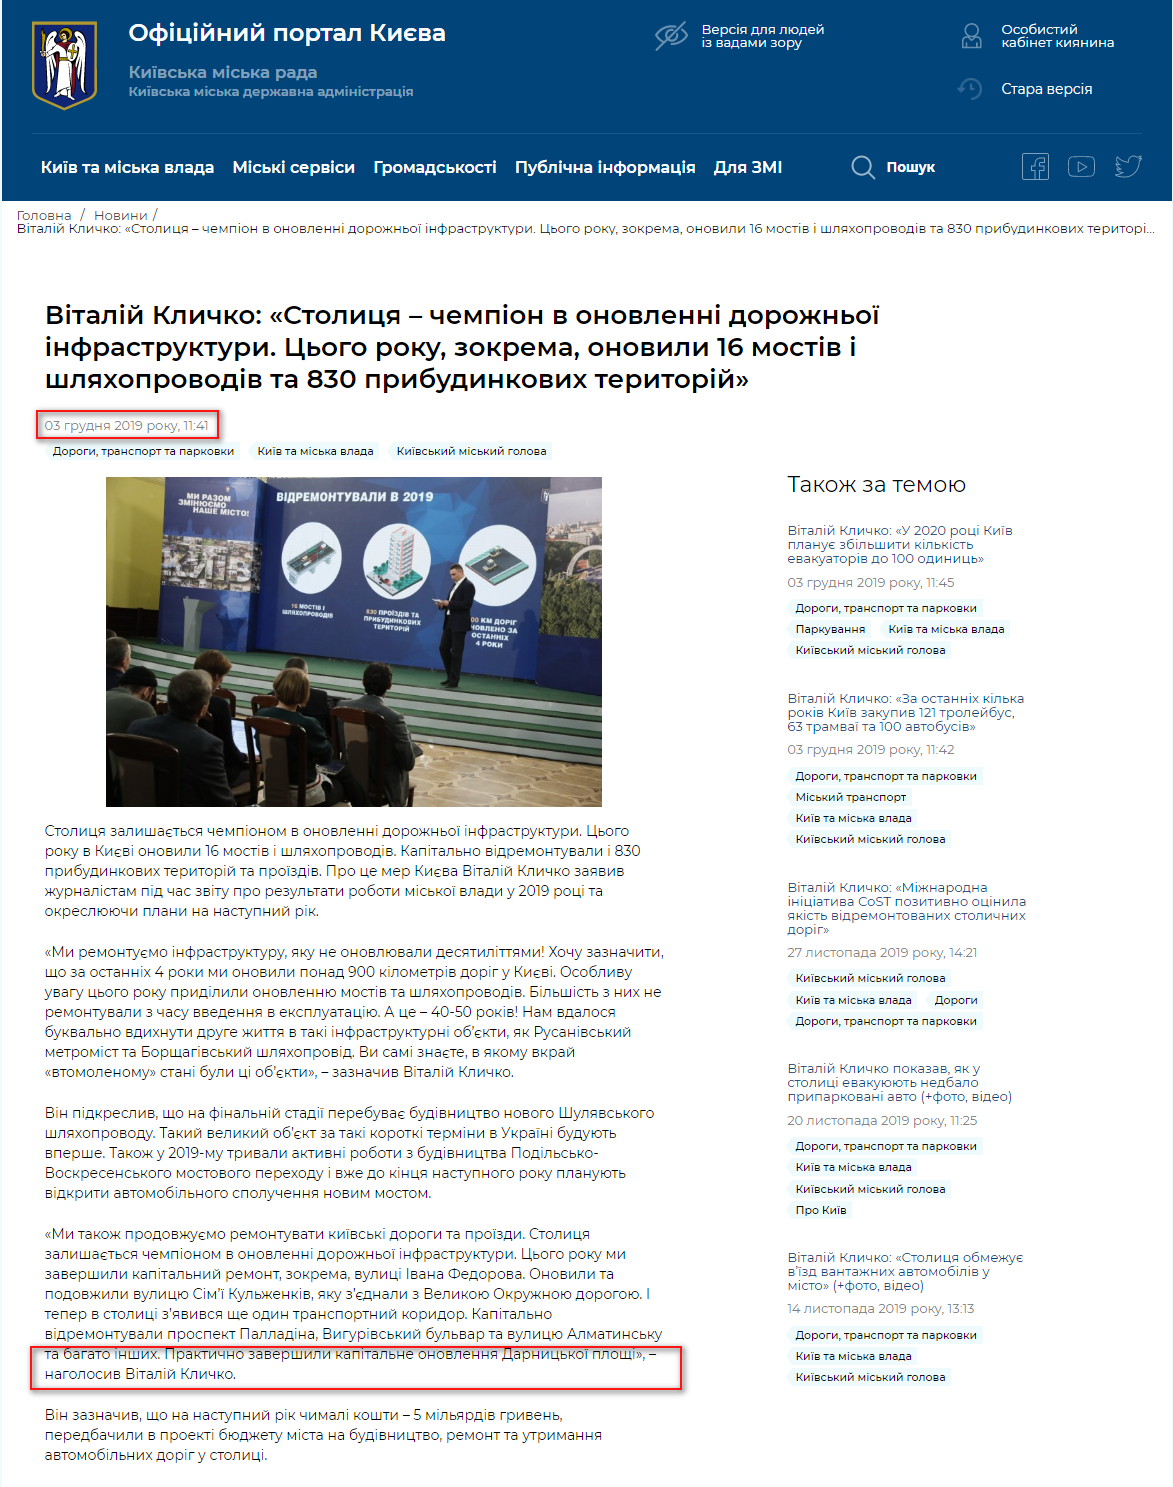 https://kyivcity.gov.ua/news/vitaliy_klichko_stolitsya__chempion_v_onovlenni_dorozhno_infrastrukturi_tsogo_roku_zokrema_onovili_16_mostiv_i_shlyakhoprovodiv_ta_830_pribudinkovikh_teritoriy/